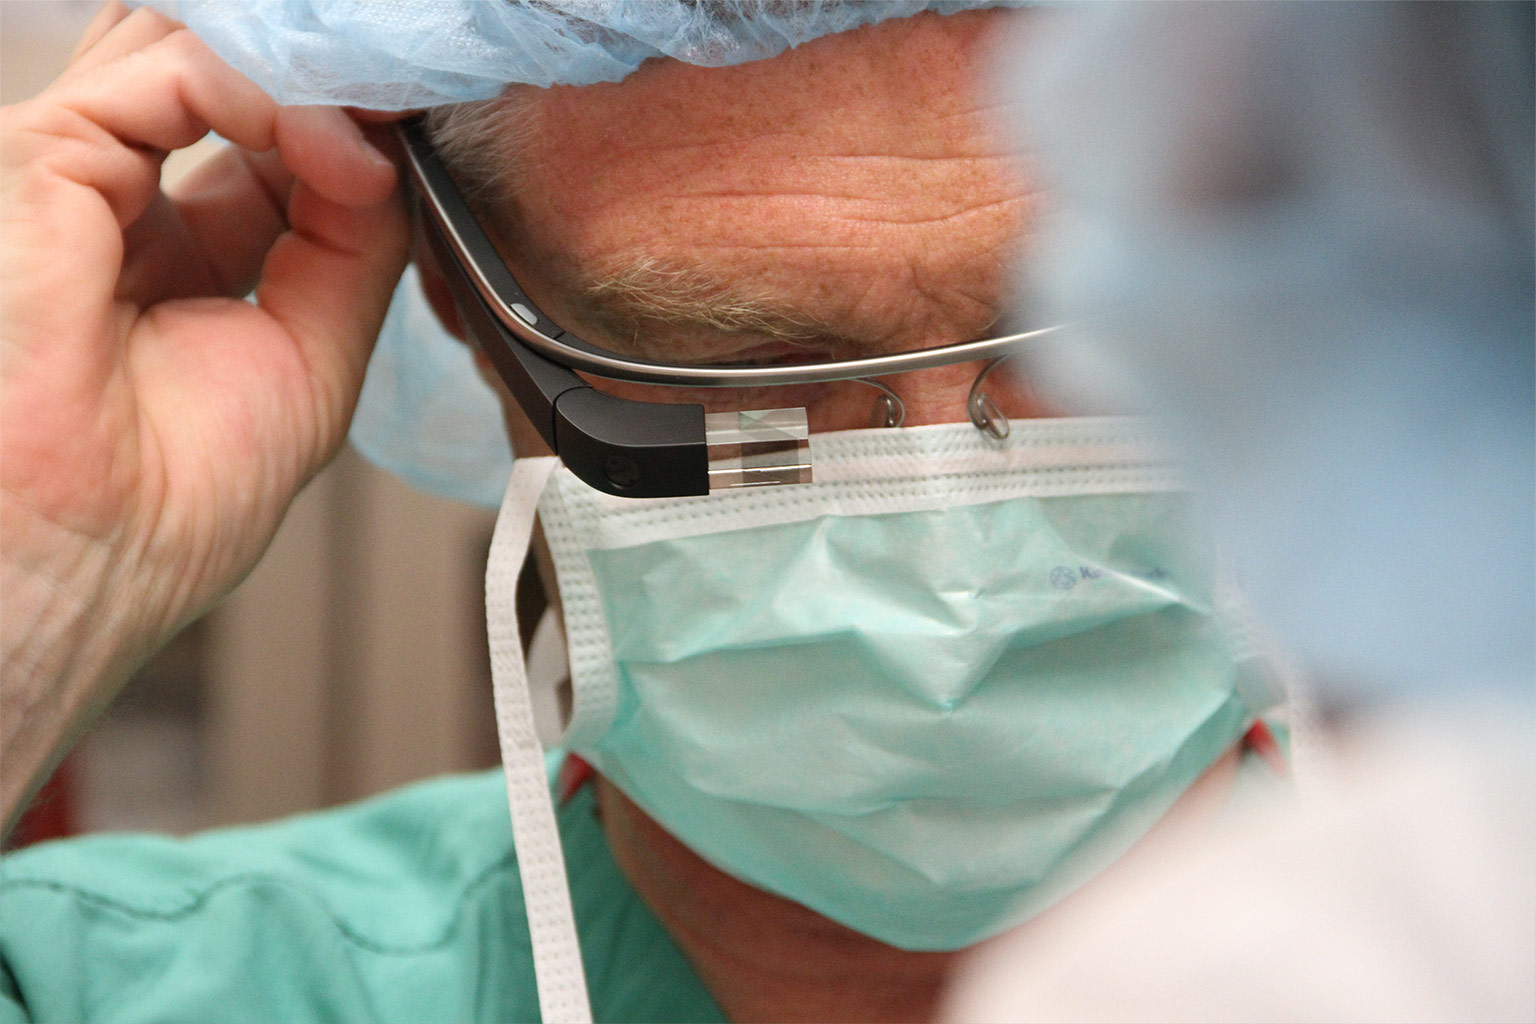 Le Japon assiste à une opération chirurgicale à travers les yeux d'un chirurgien Français grâce à Google Glass